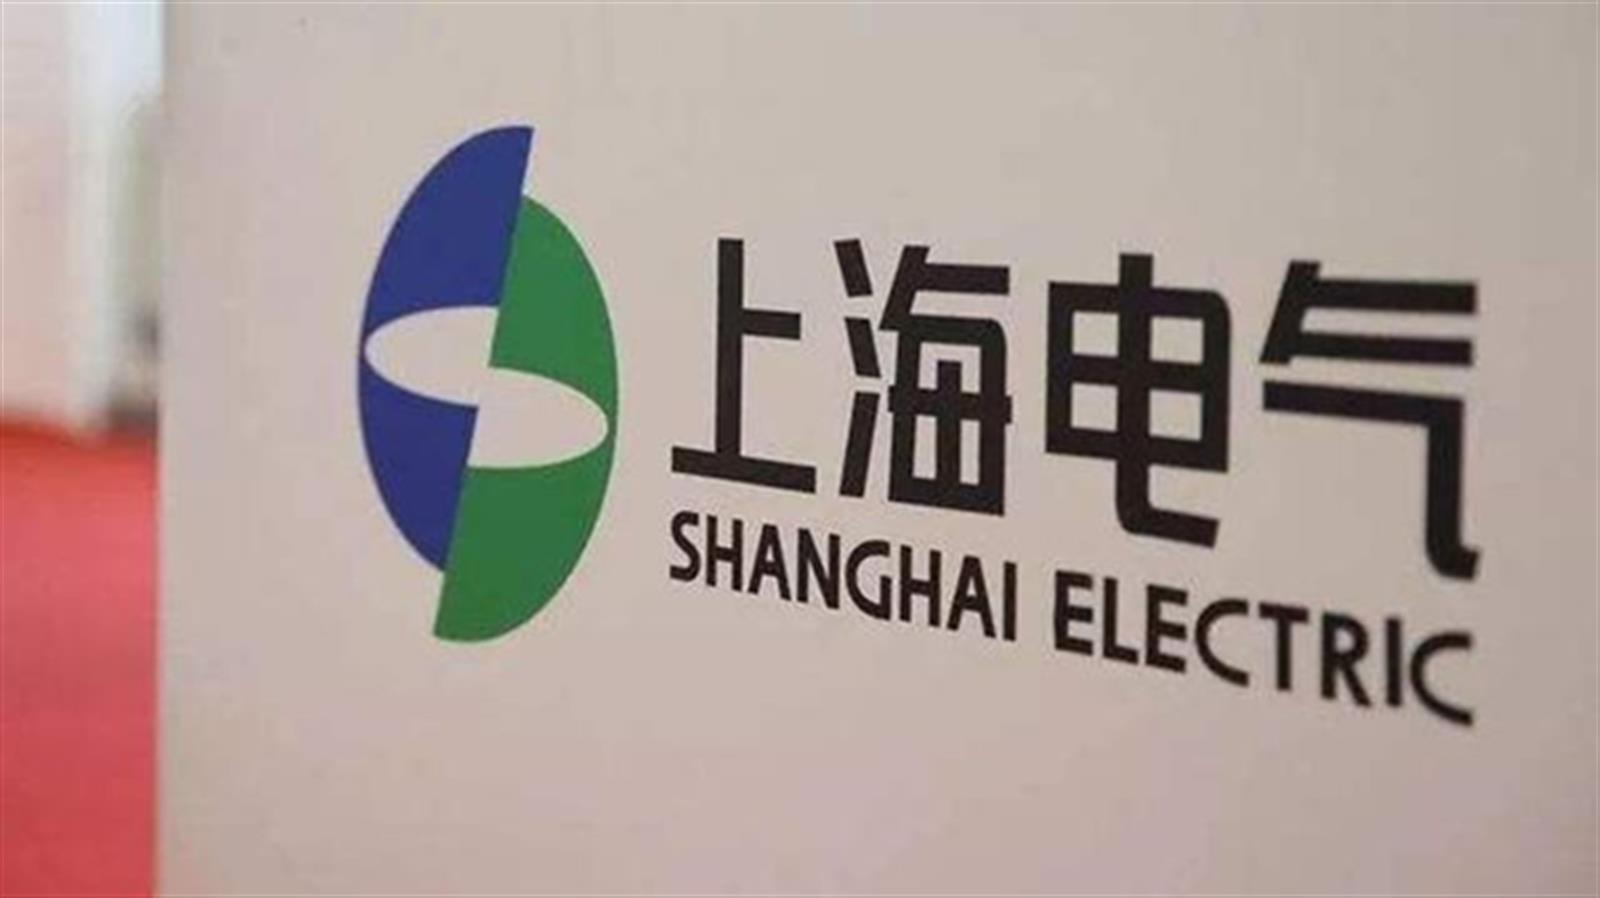 上海電氣子公司存在應收賬款無法收回風險　潛在損失83億元